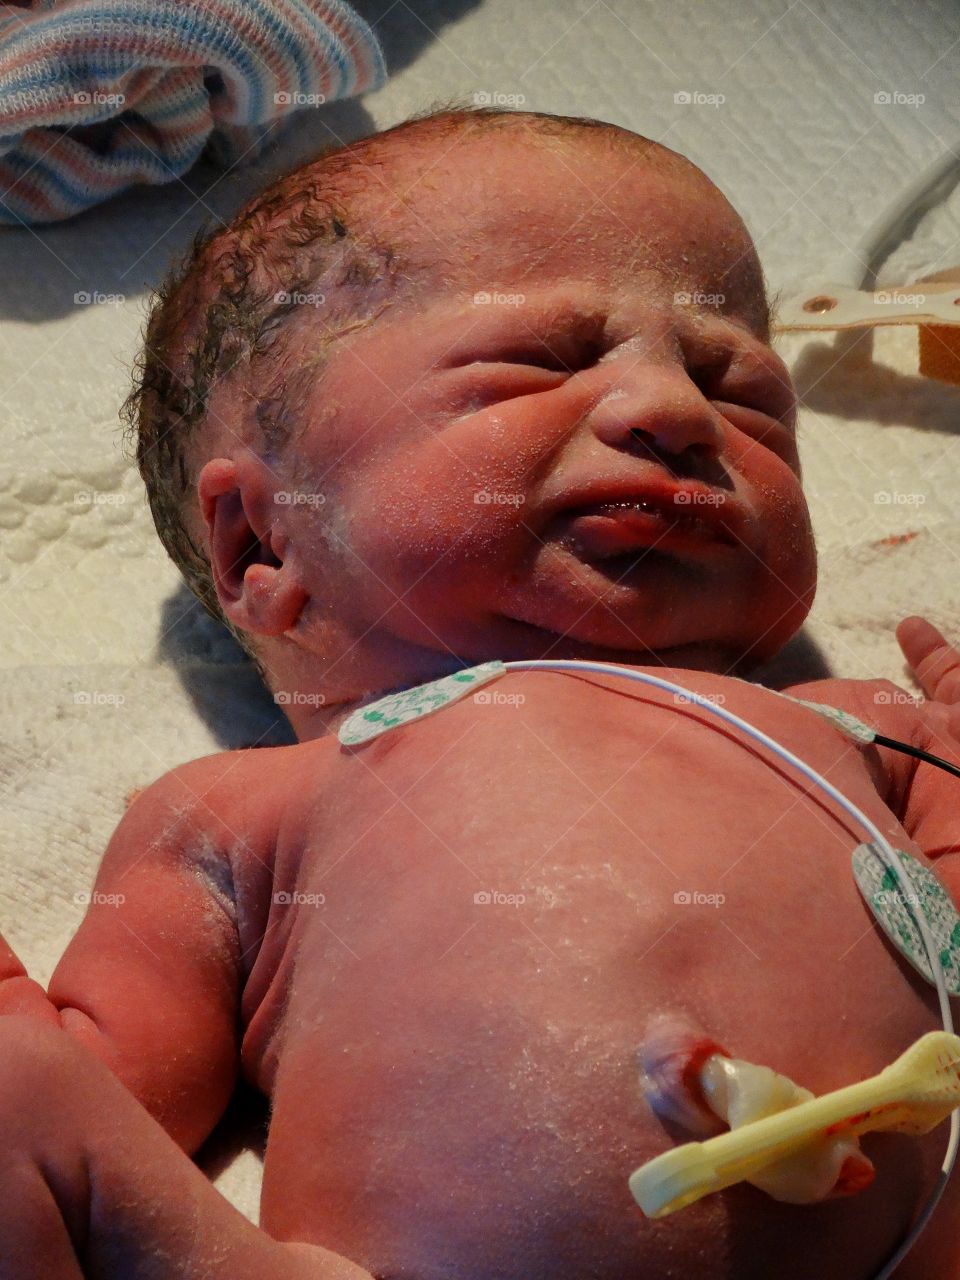 Newborn Infant In Intensive Care
